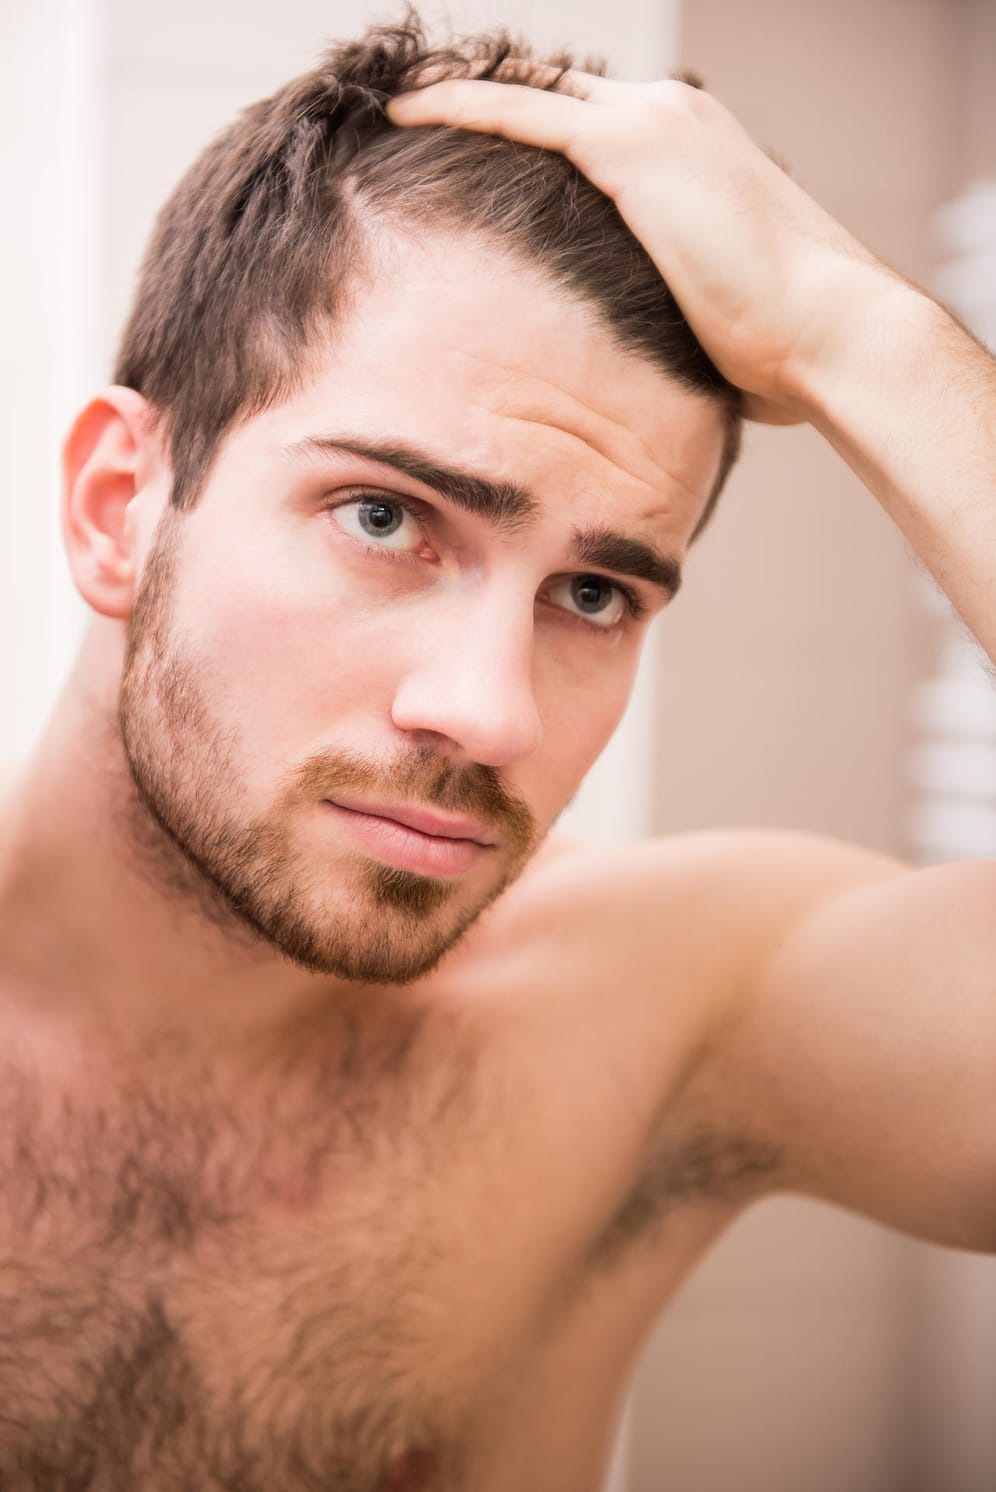 Haarausfall beginnt bei vielen Männern bereits zwischen 20 und 30 Jahren.